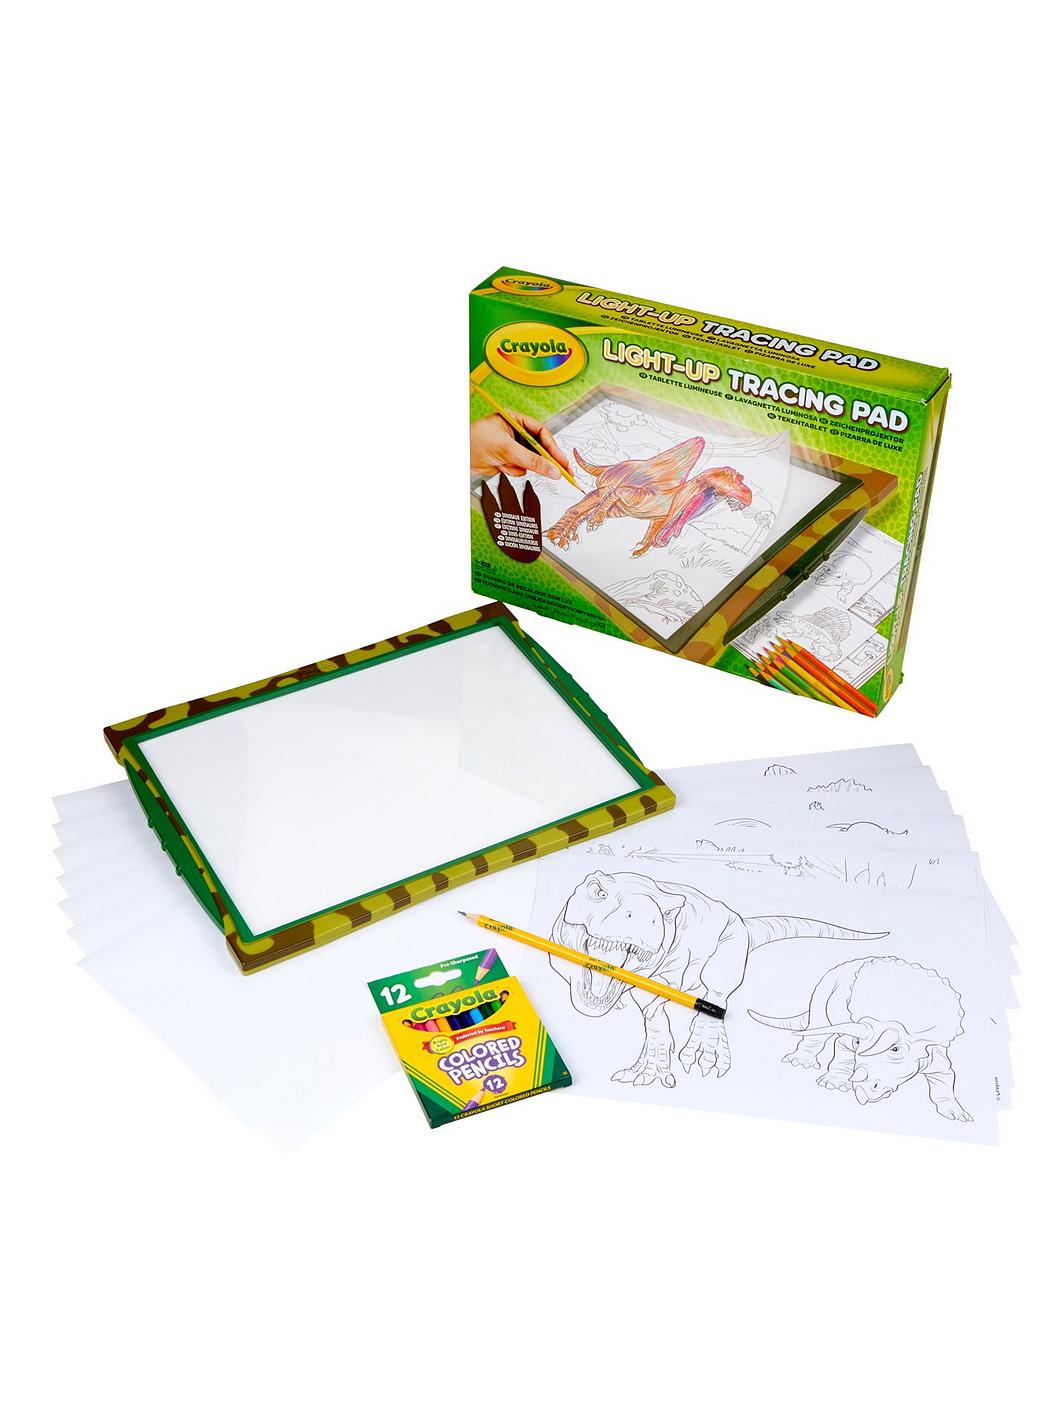 Crayola Light Up Tracing Pad - Dino Edition